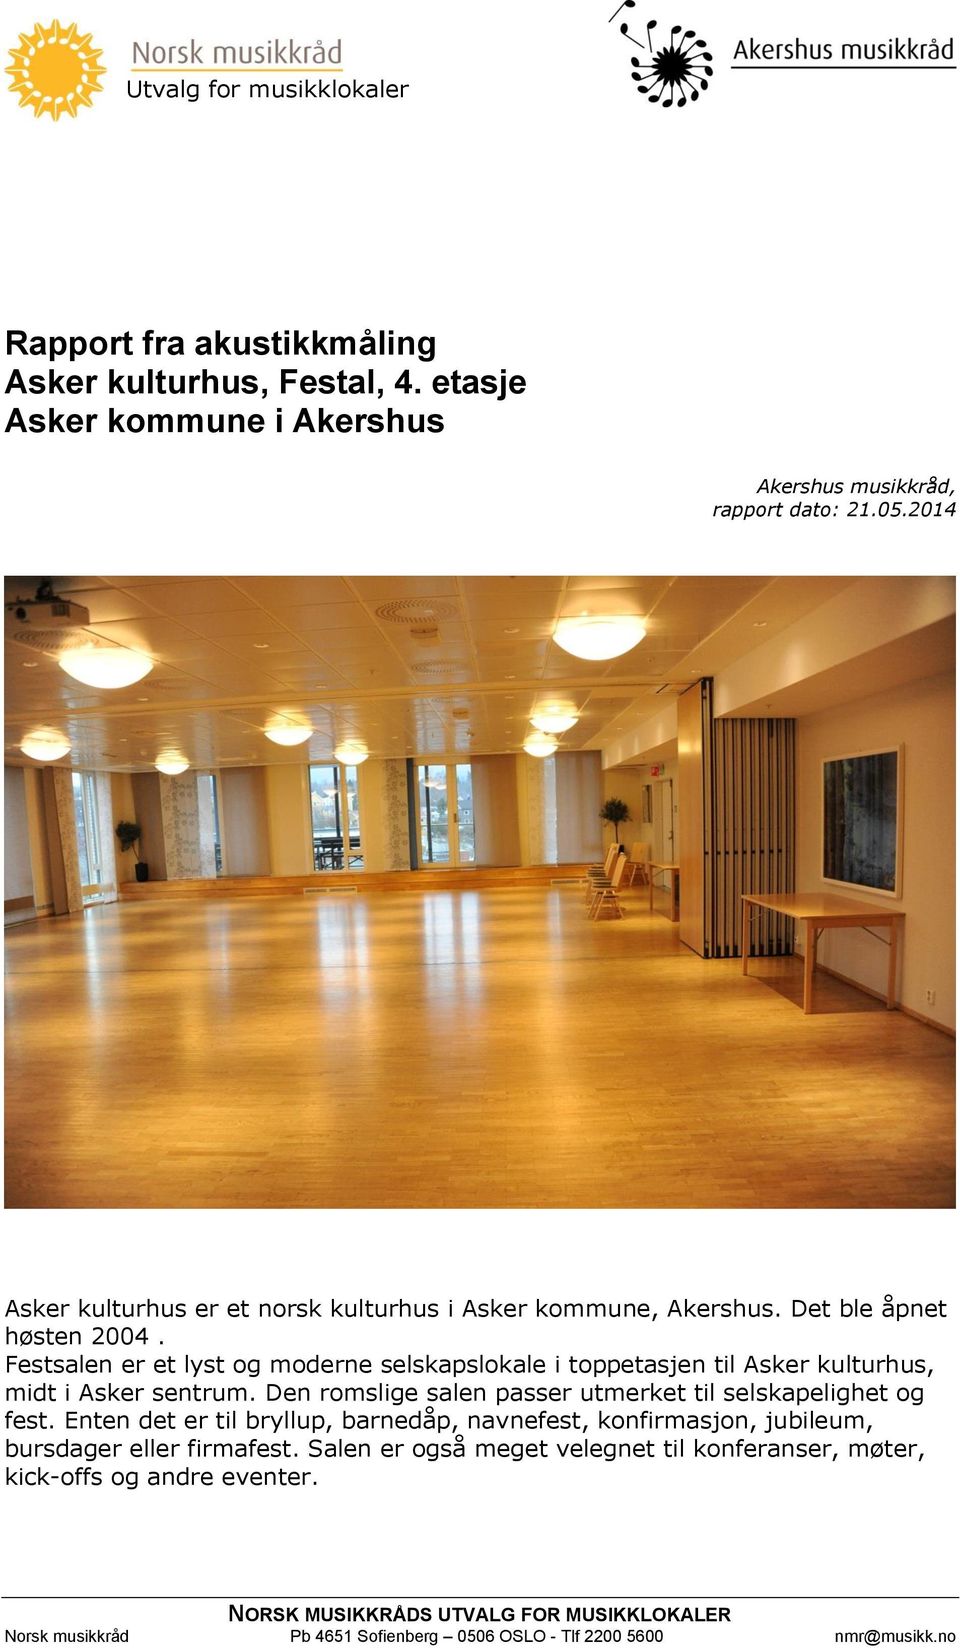 Festsalen er et lyst og moderne selskapslokale i toppetasjen til Asker kulturhus, midt i Asker sentrum. Den romslige salen passer utmerket til selskapelighet og fest.